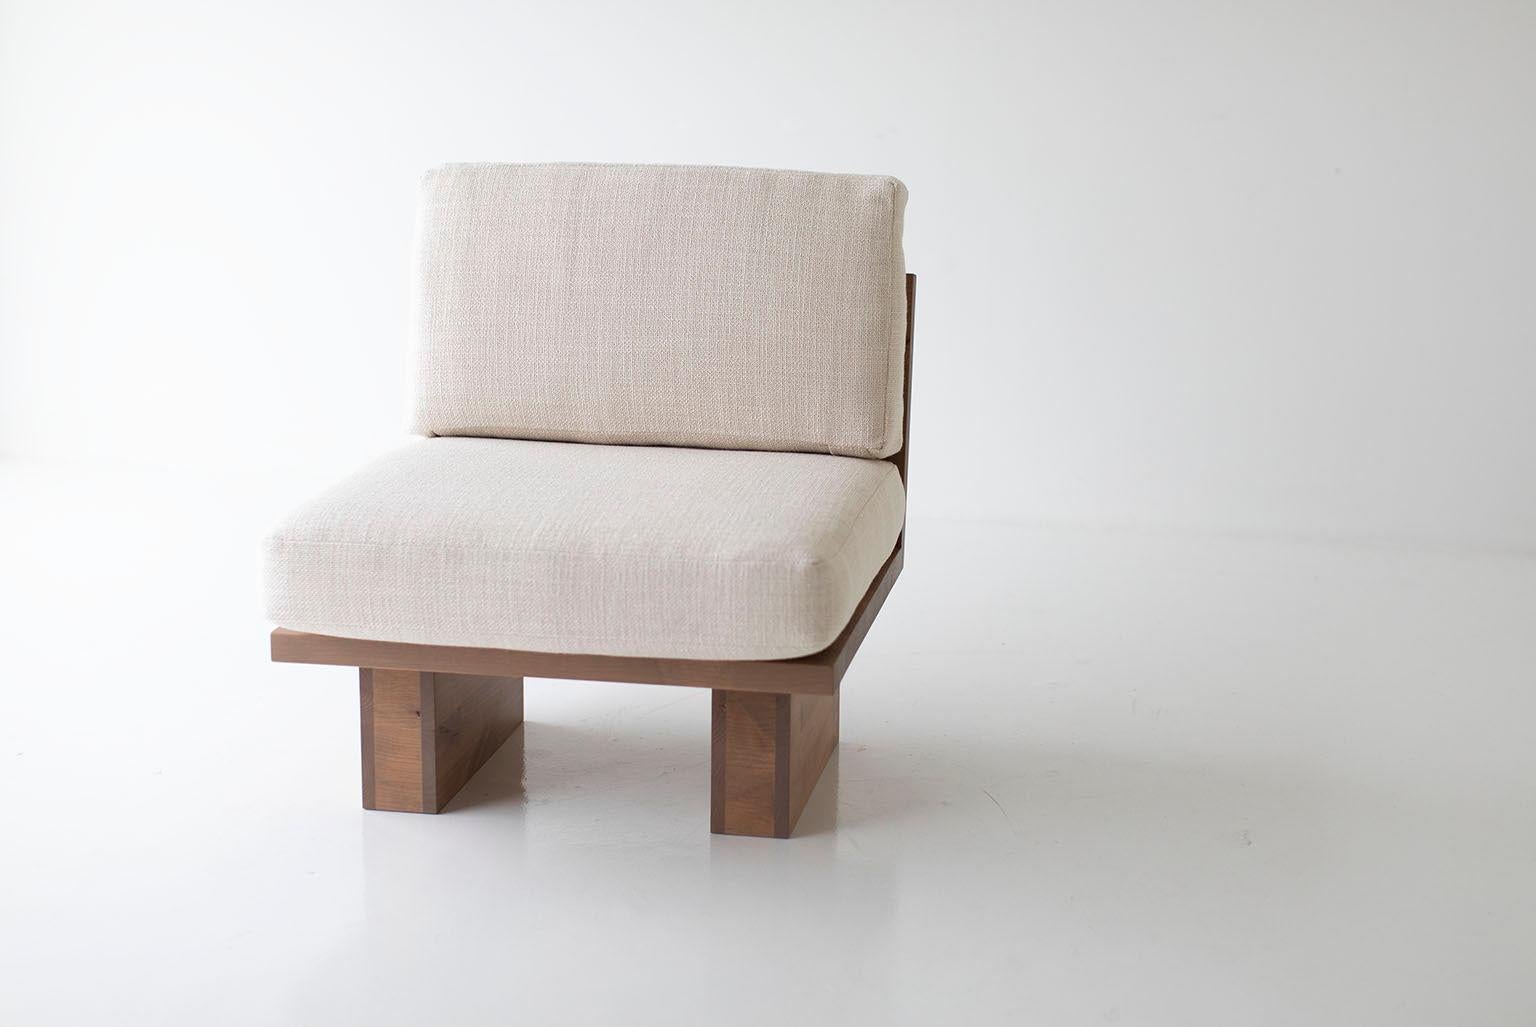 Cette chaise d'appoint moderne Suelo est magnifiquement construite en bois massif dans l'Ohio, aux États-Unis. La silhouette de la chaise longue est simple, moderne et élégante, avec des coussins de siège et de dossier confortables. C'est la chaise